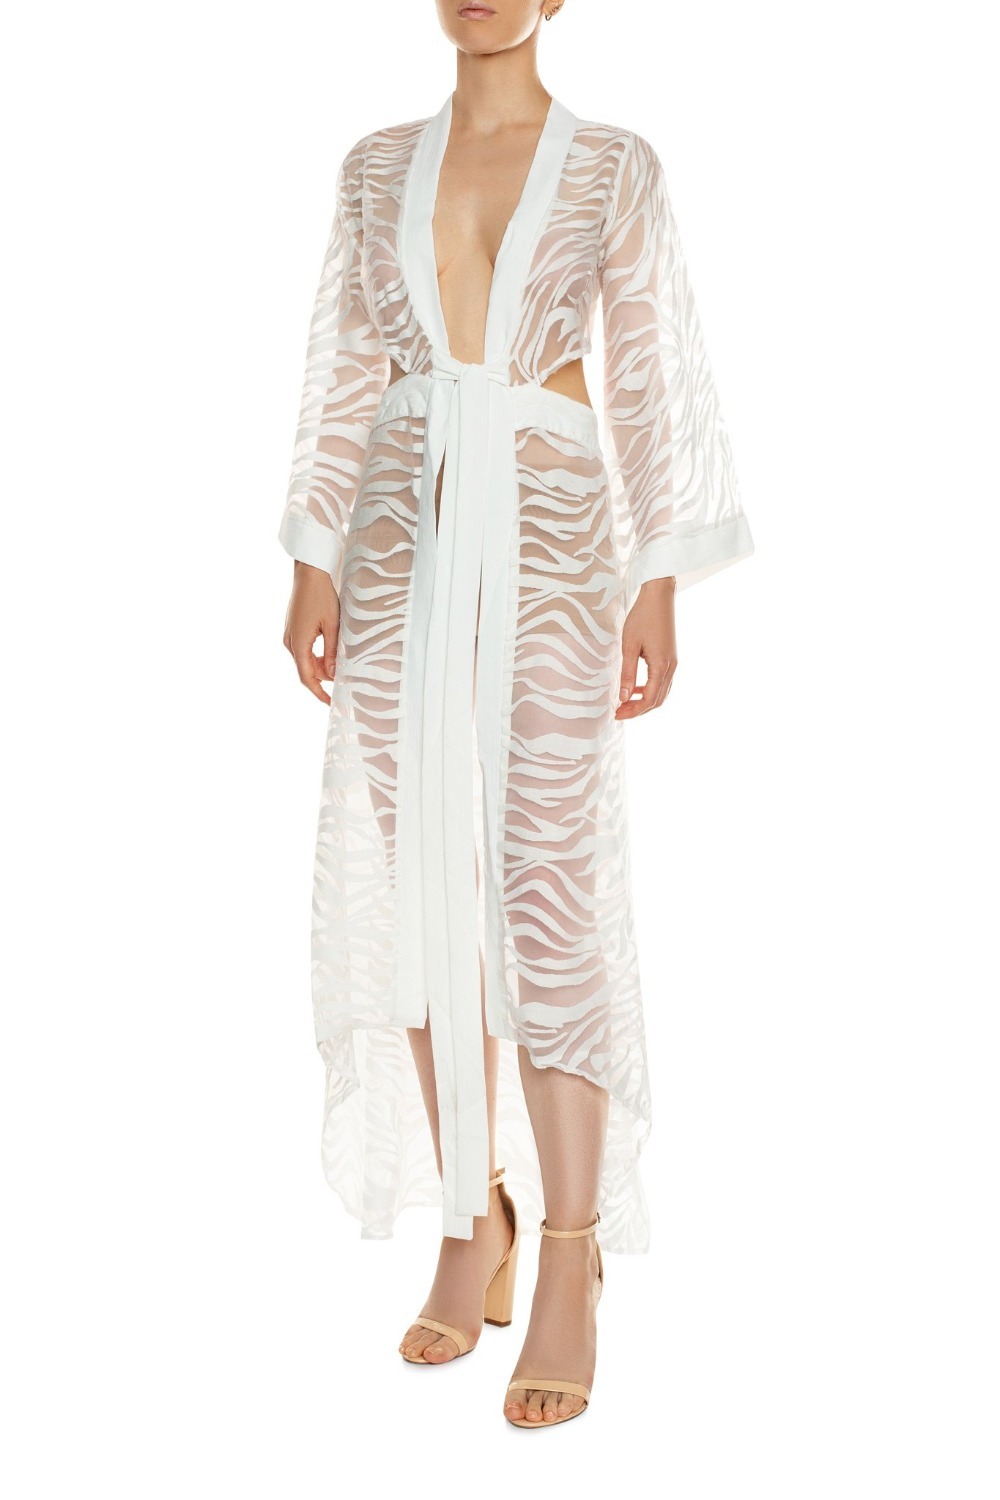 Sevilla Transparent Kimono White Dress